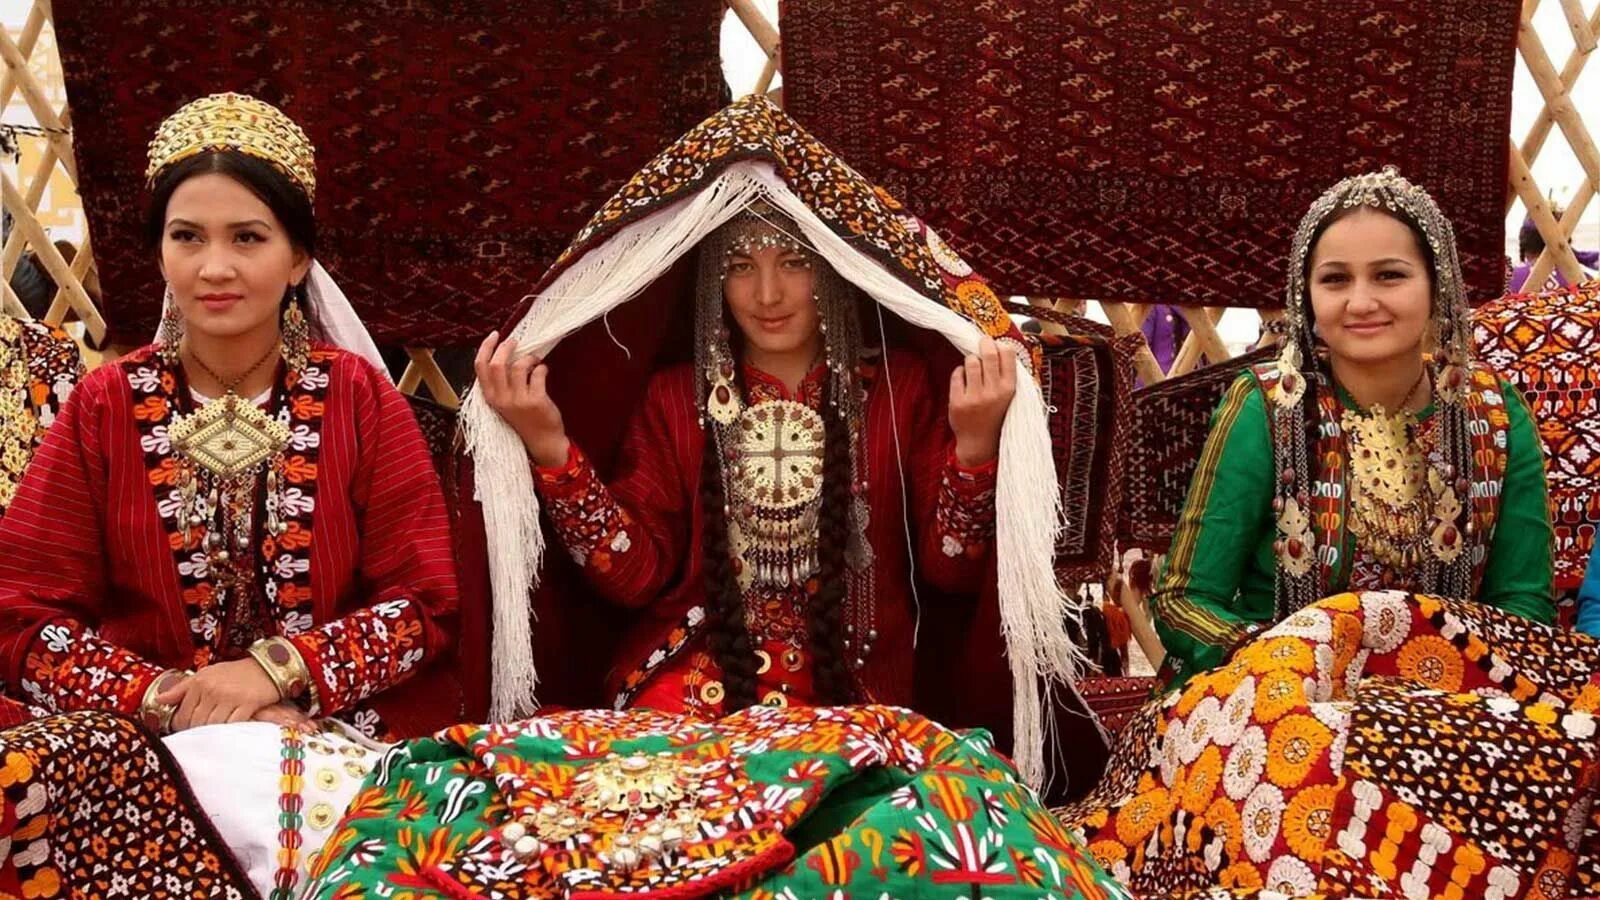 Свадьба Ашхабадская туркменский. Национальный наряд невесты Туркмен. Туркменистан Туркмен туркменка. Национальная одежда Туркмении Национальная одежда.